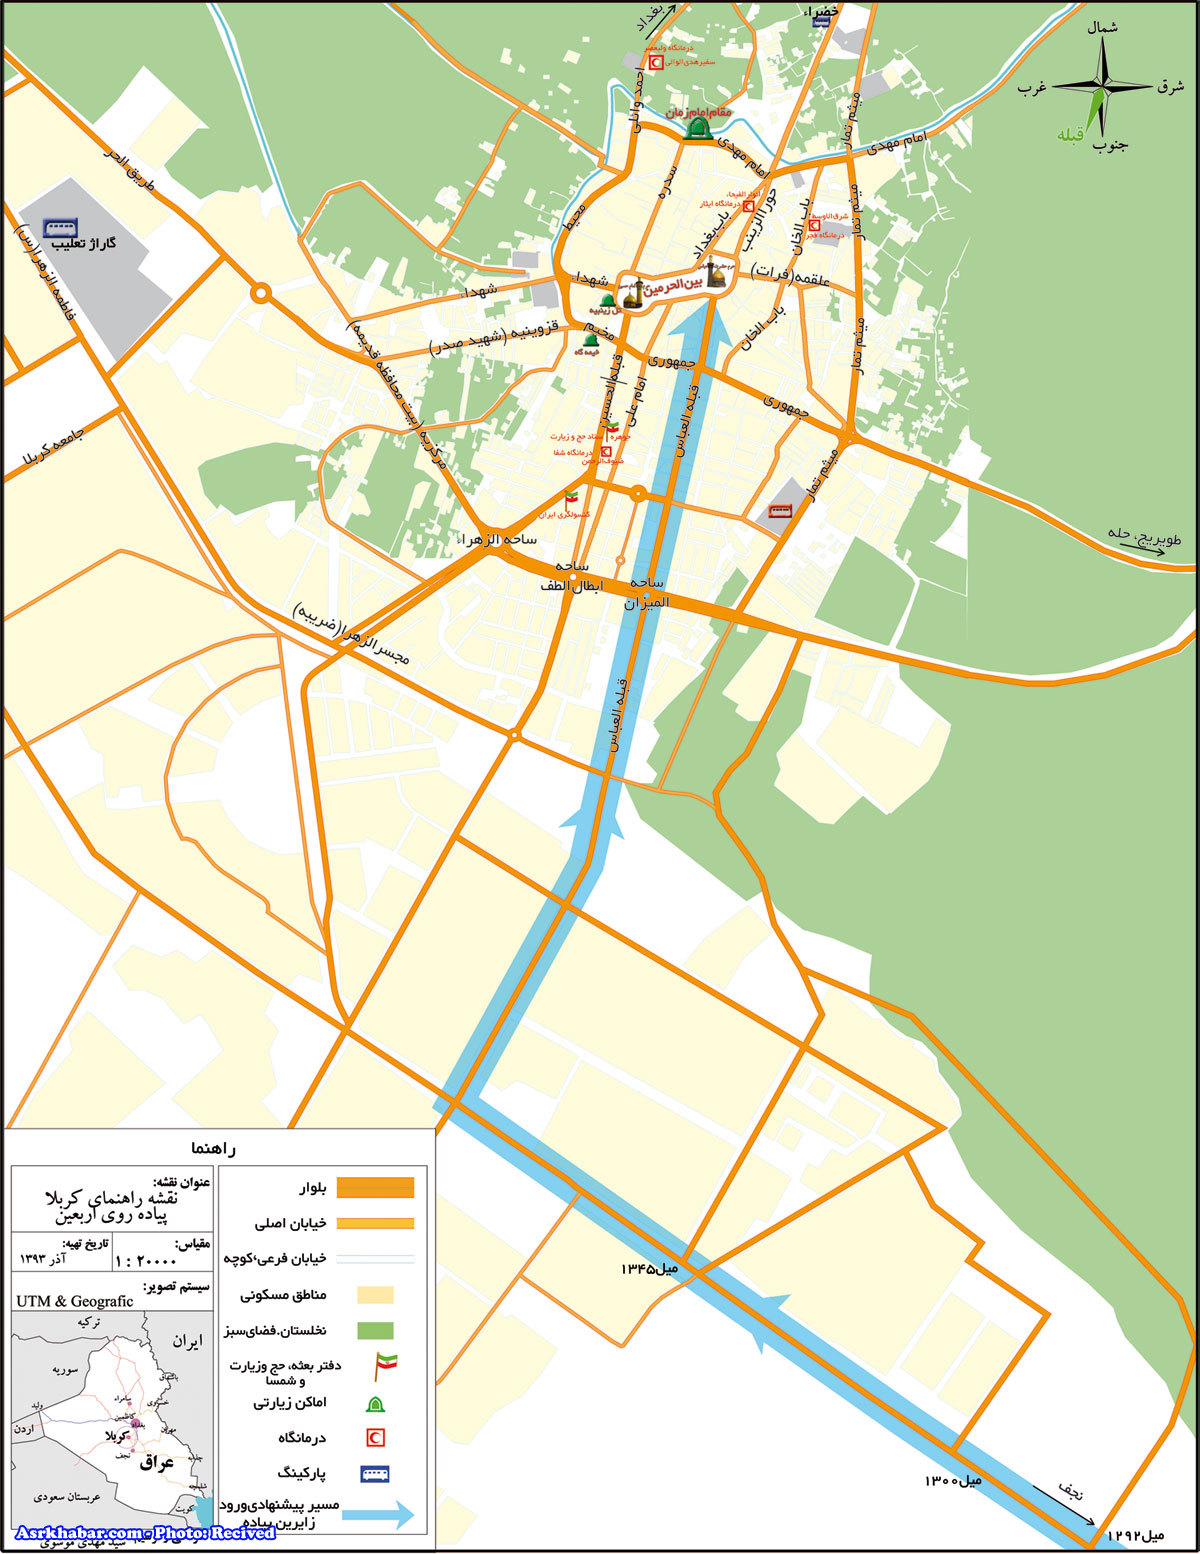 جزئیات پیاده روی اربعین/نقشه پیاده روی/نکات مهم برای پیاده روی اربعین/نقشه کامل مرزهای ایران + دانلود